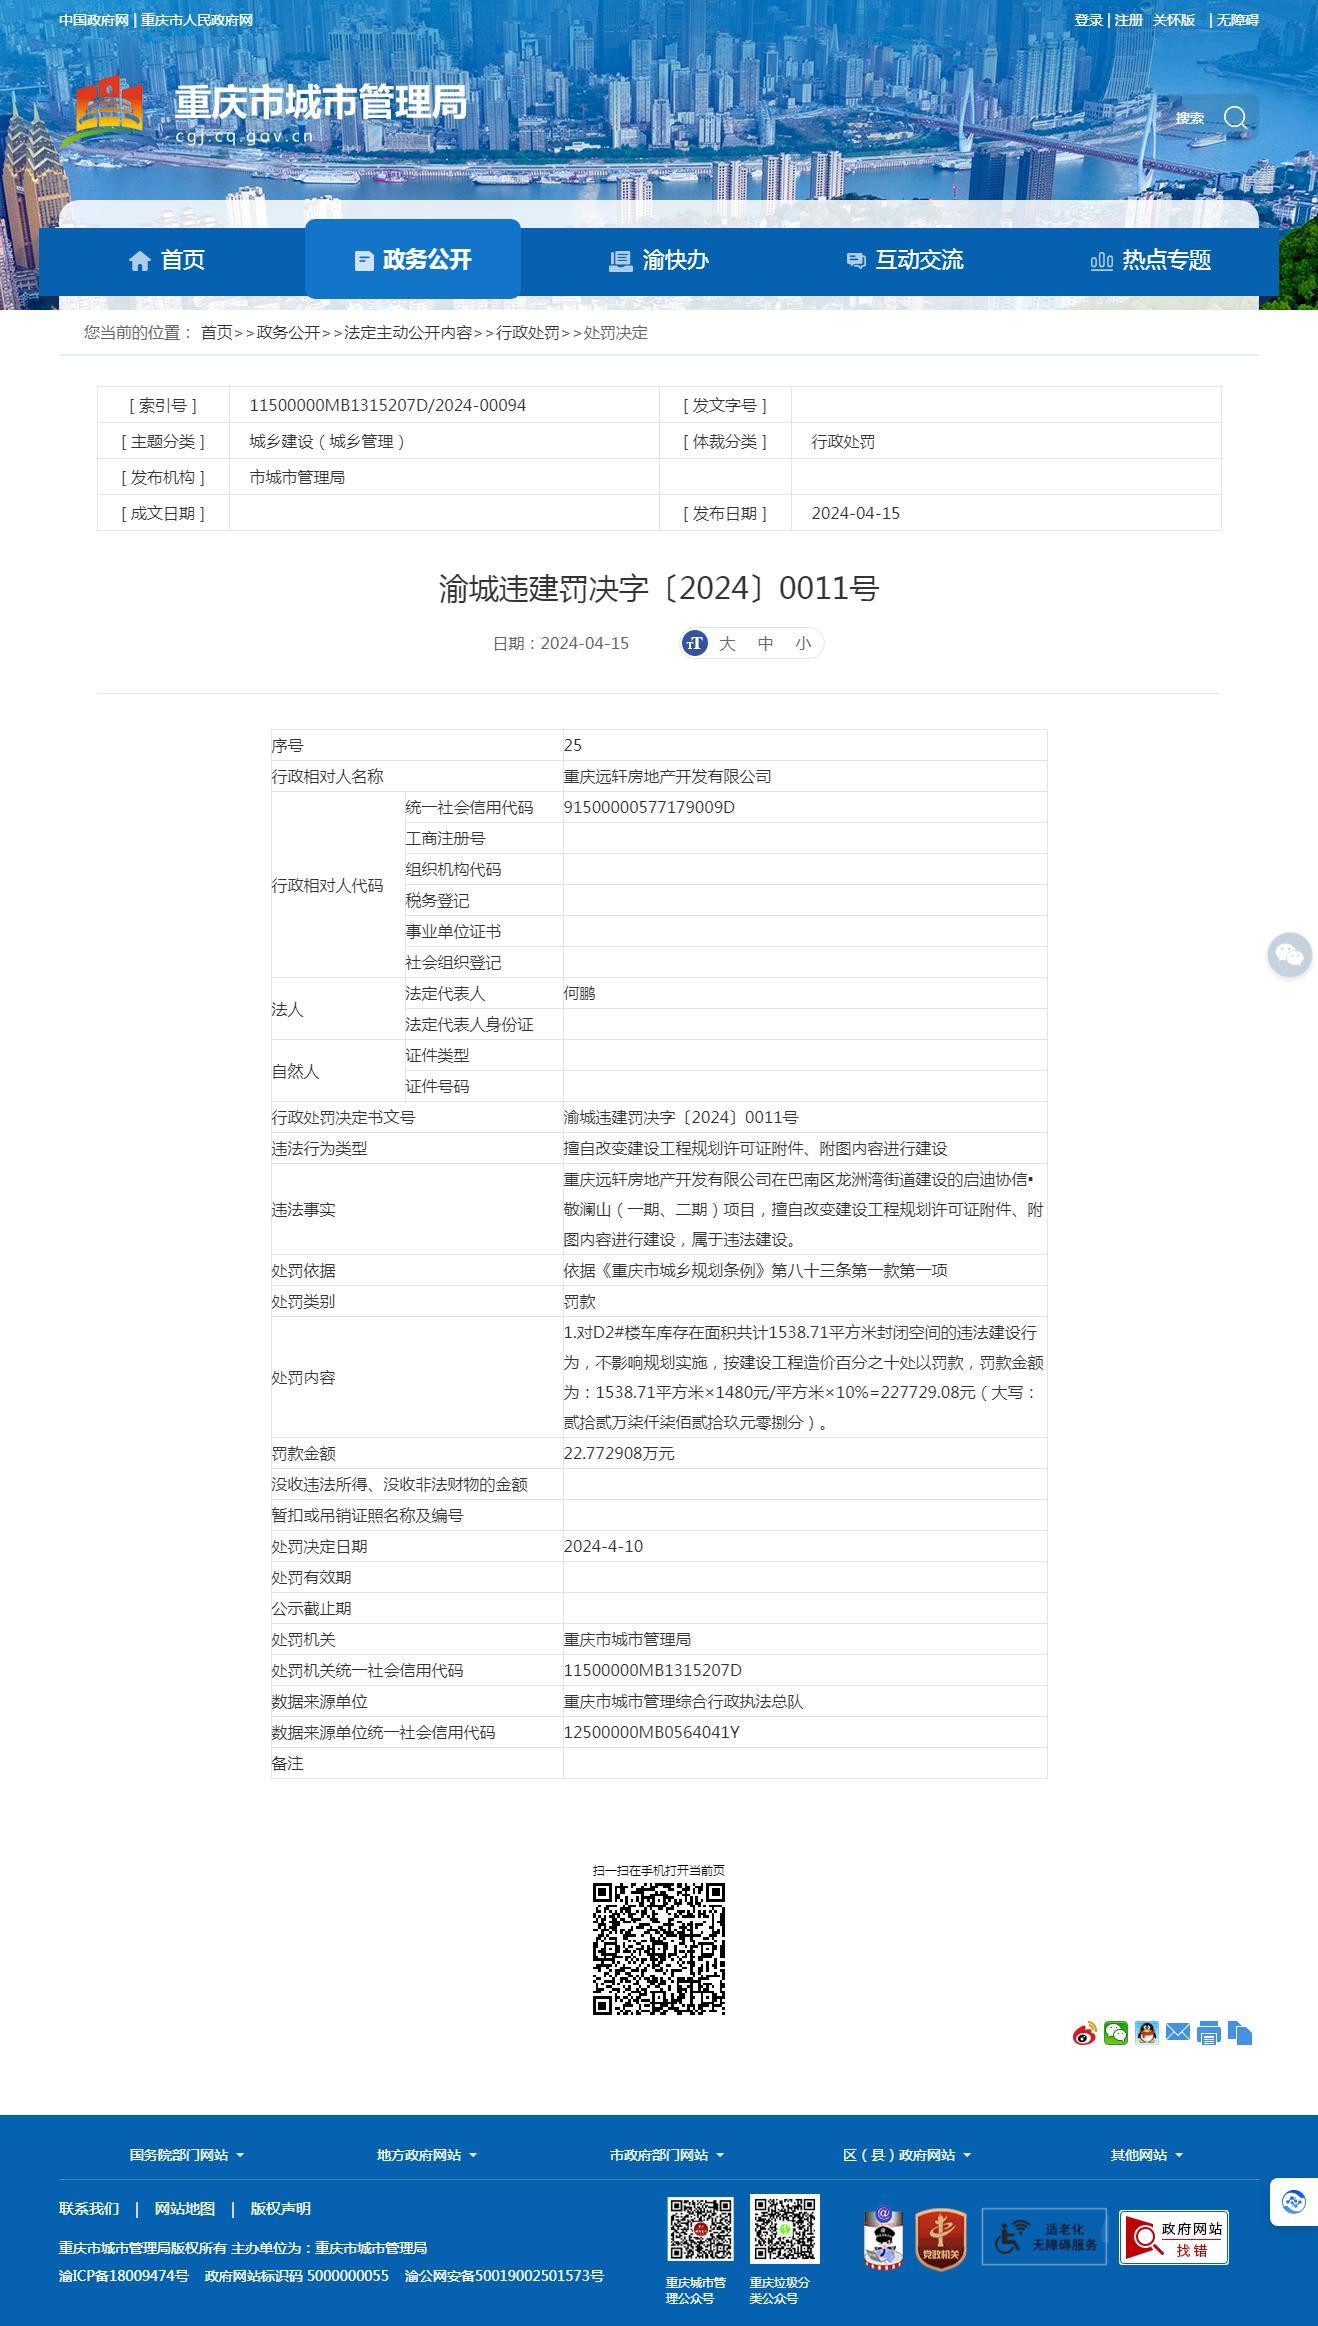 重庆远轩房地产开发有限公司因擅自改变建设工程规划许可证附件、附图内容进行建设被罚22.77万余元